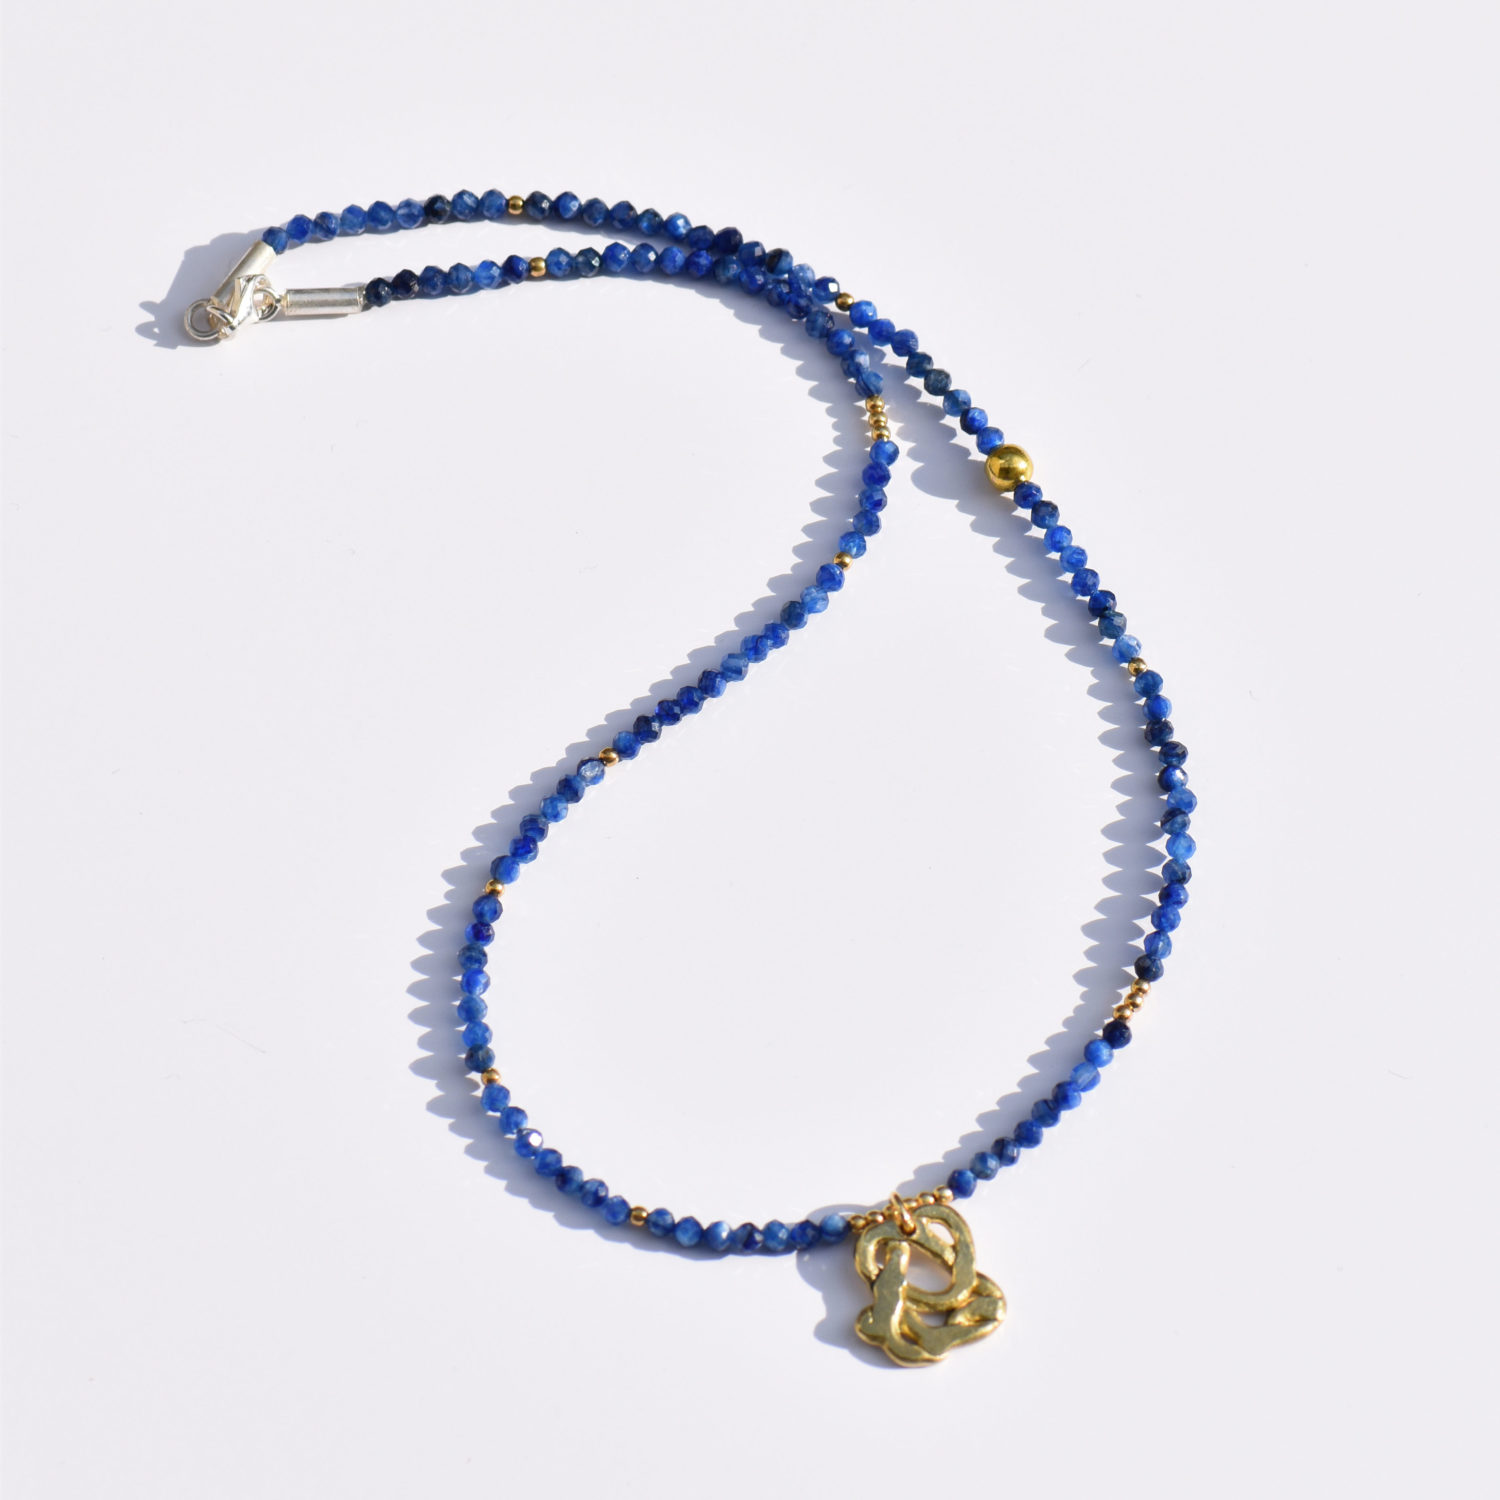 Ravel stone naszyjnik srebro pozlacane lapis lazuli bizuteria galeria ora